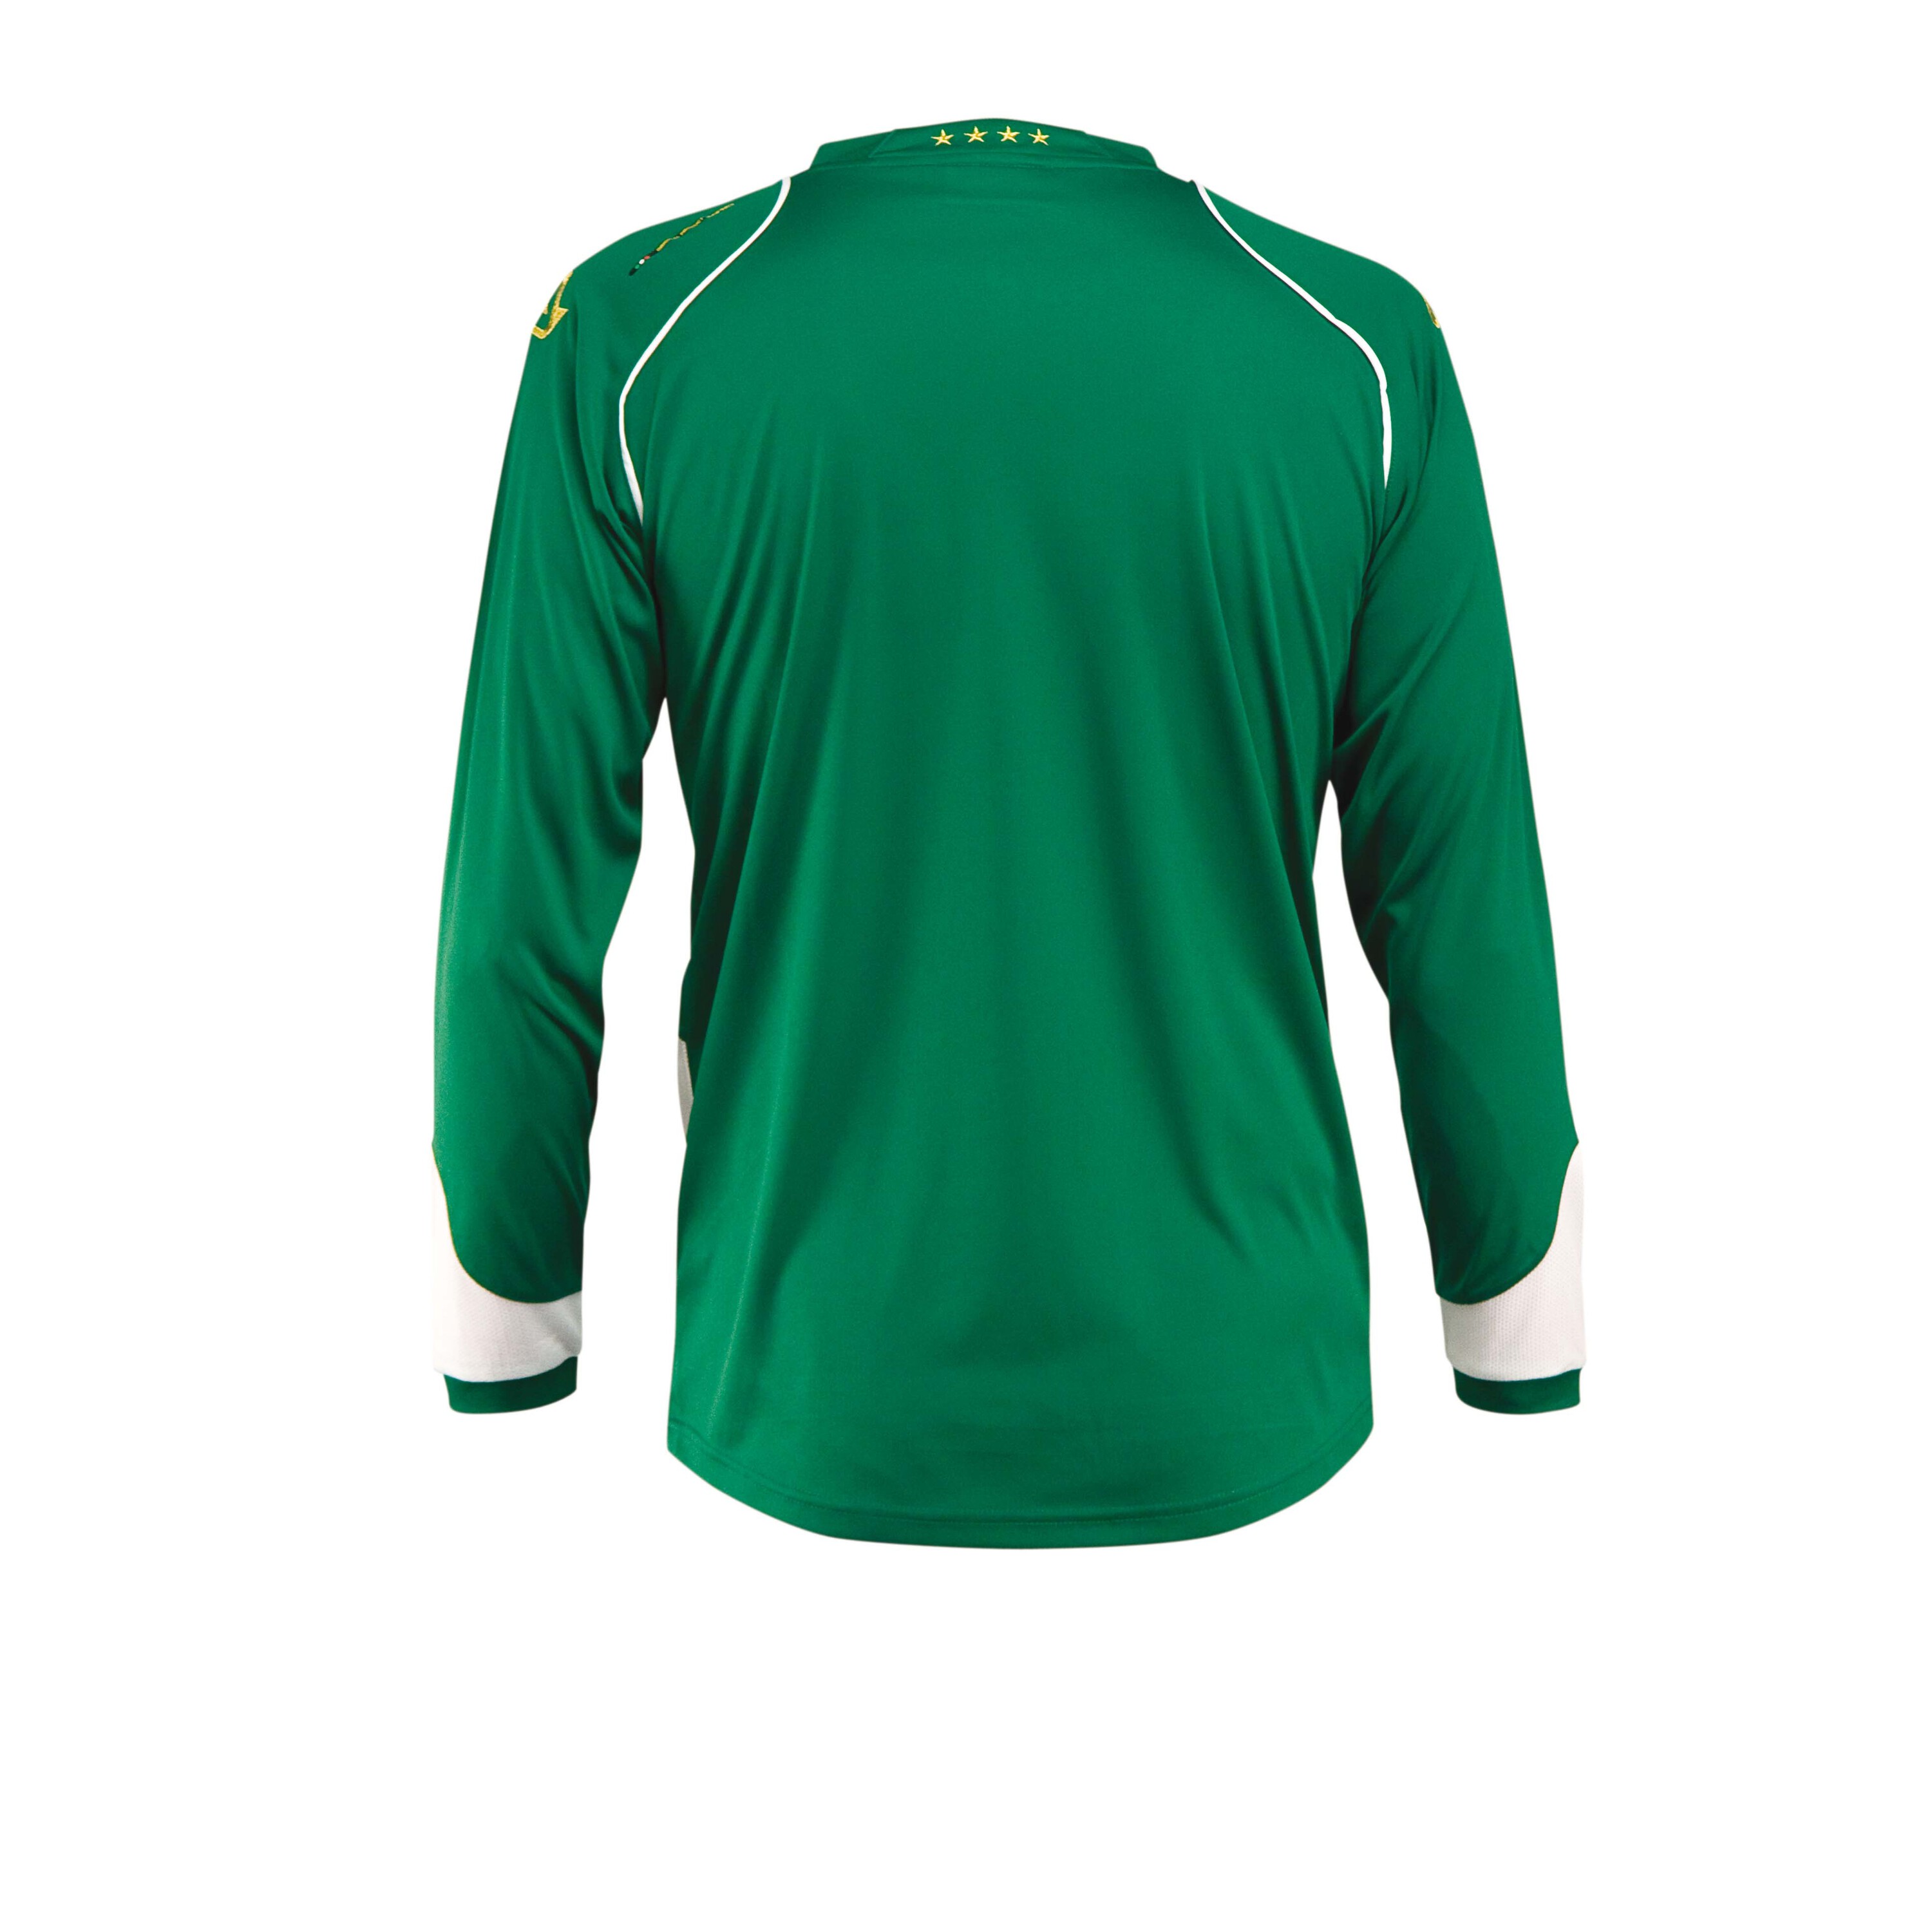 Camiseta Acerbis 4stelle Manga Larga - T-shirt Deportiva  MKP